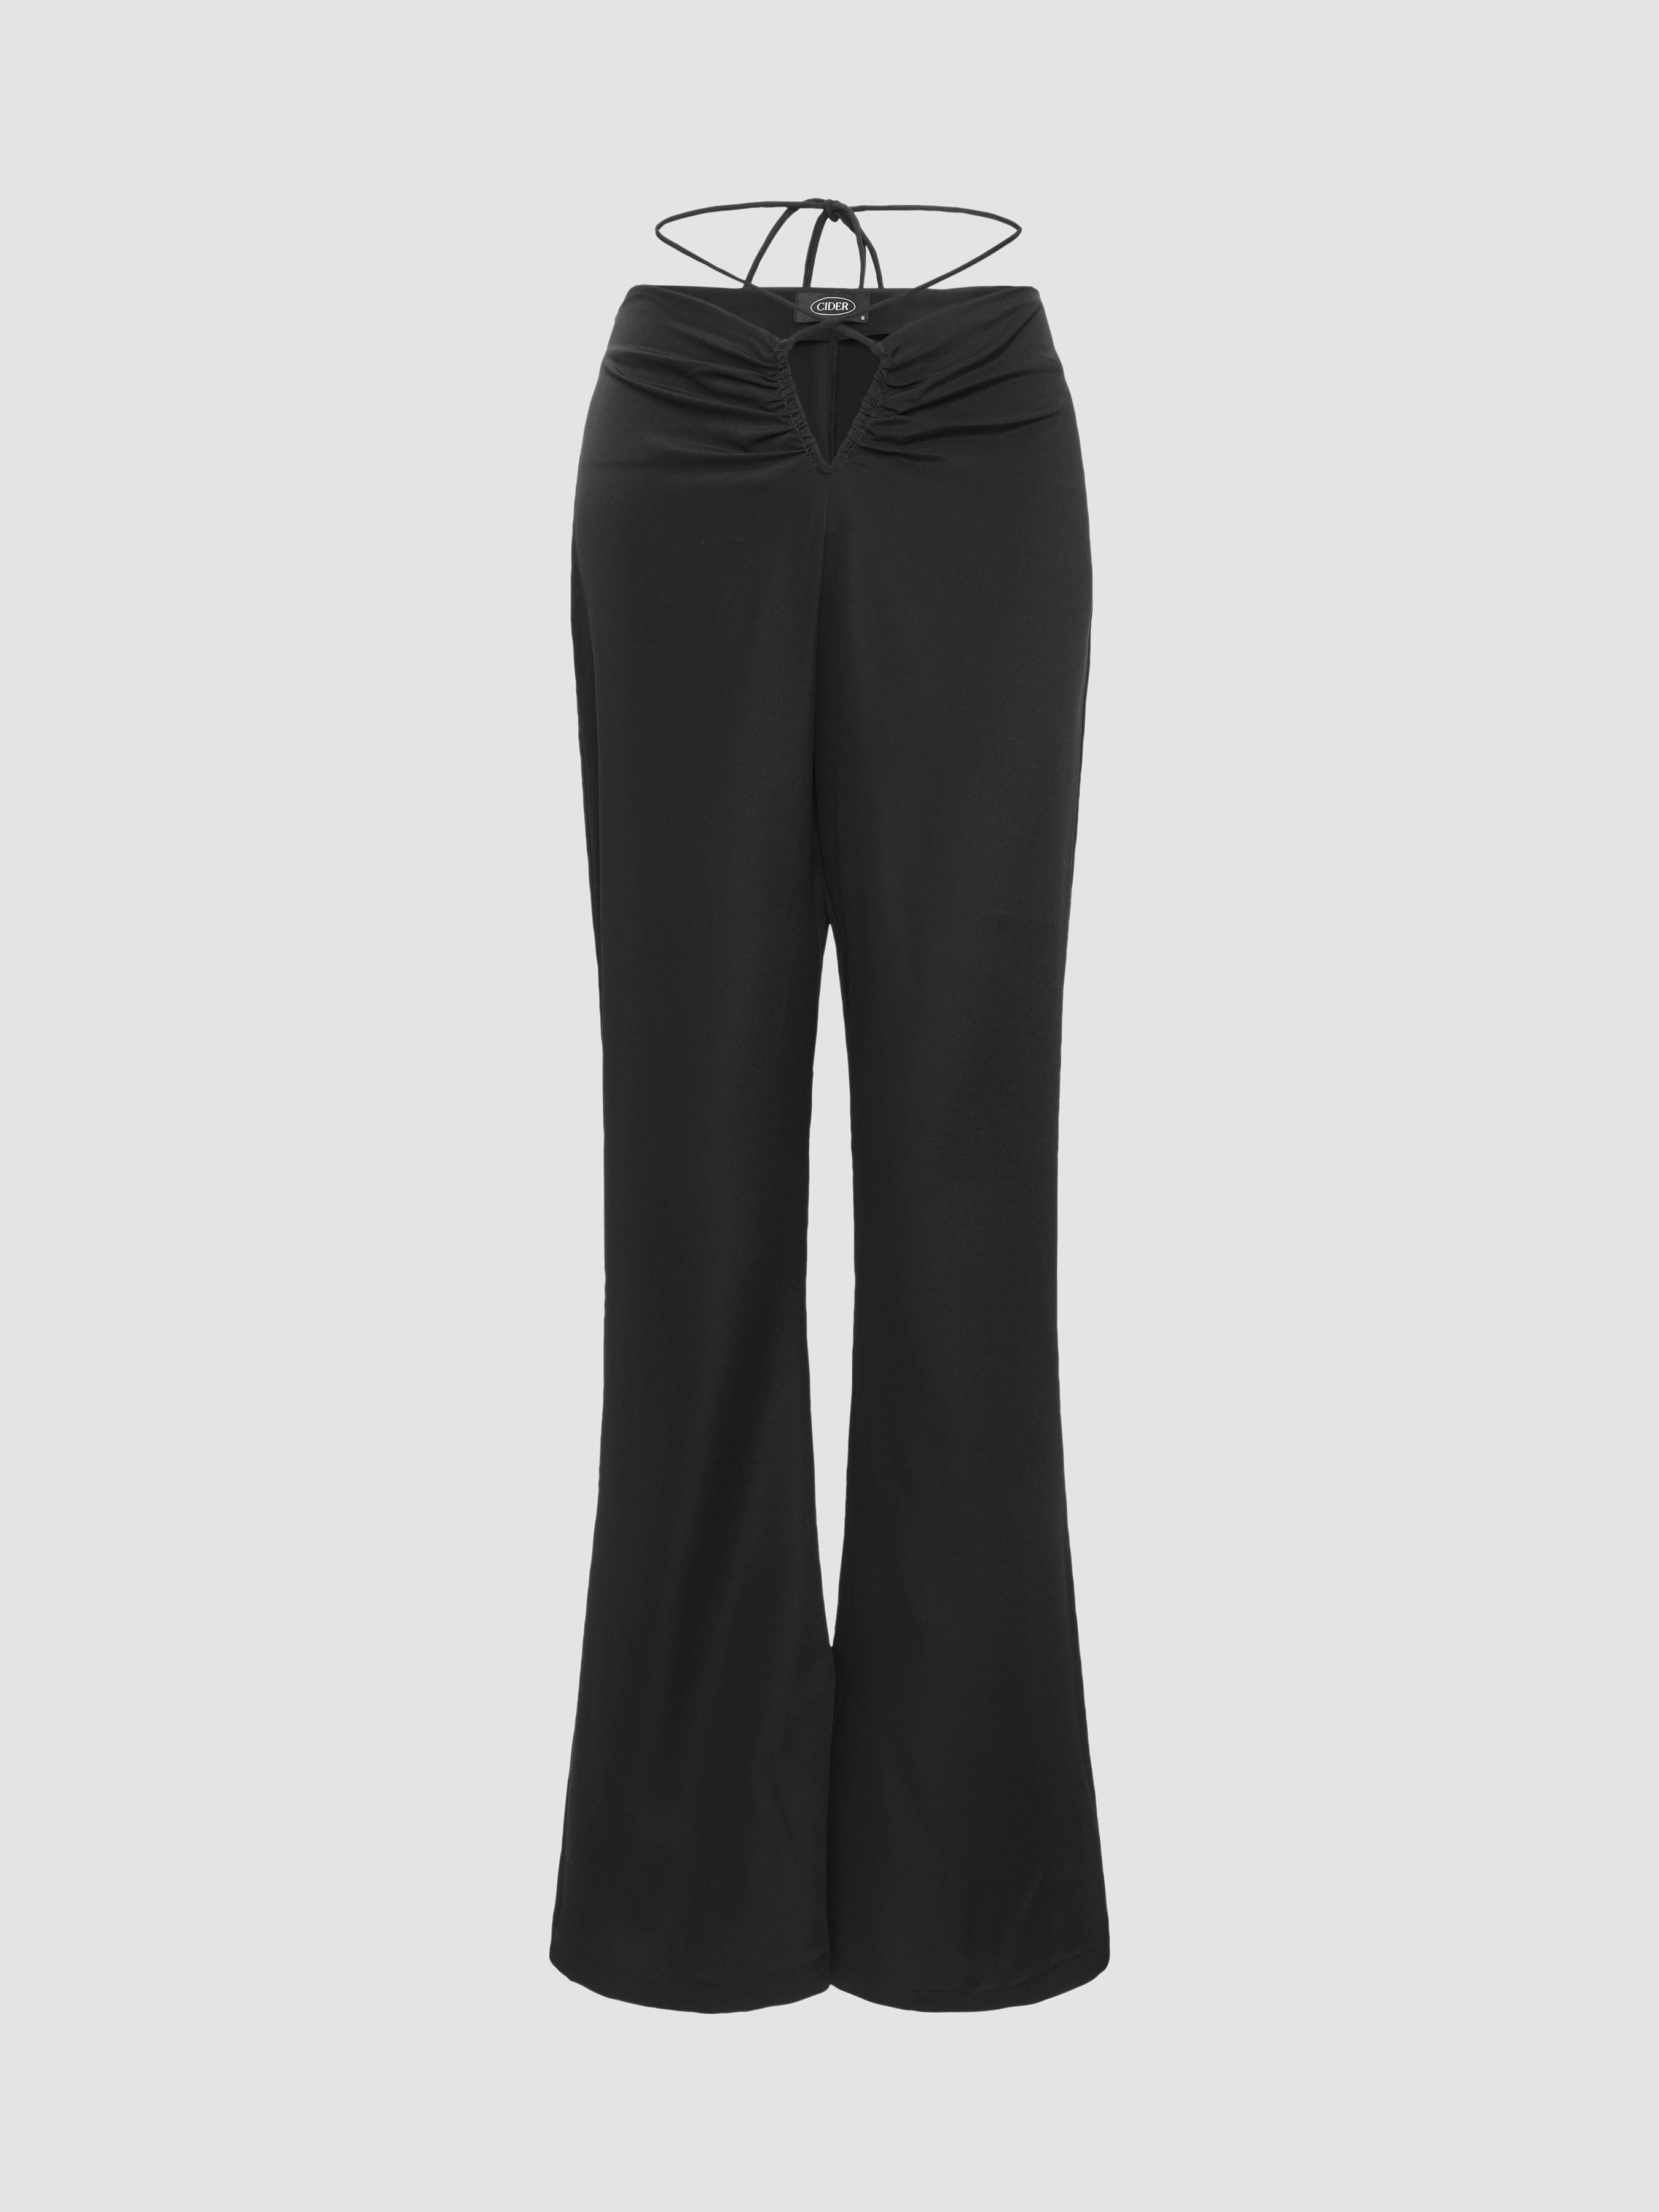 $110 Aqua Women's Black Tie Waist Pleated Wide Leg Casual Trousers Pants  Size XS | eBay